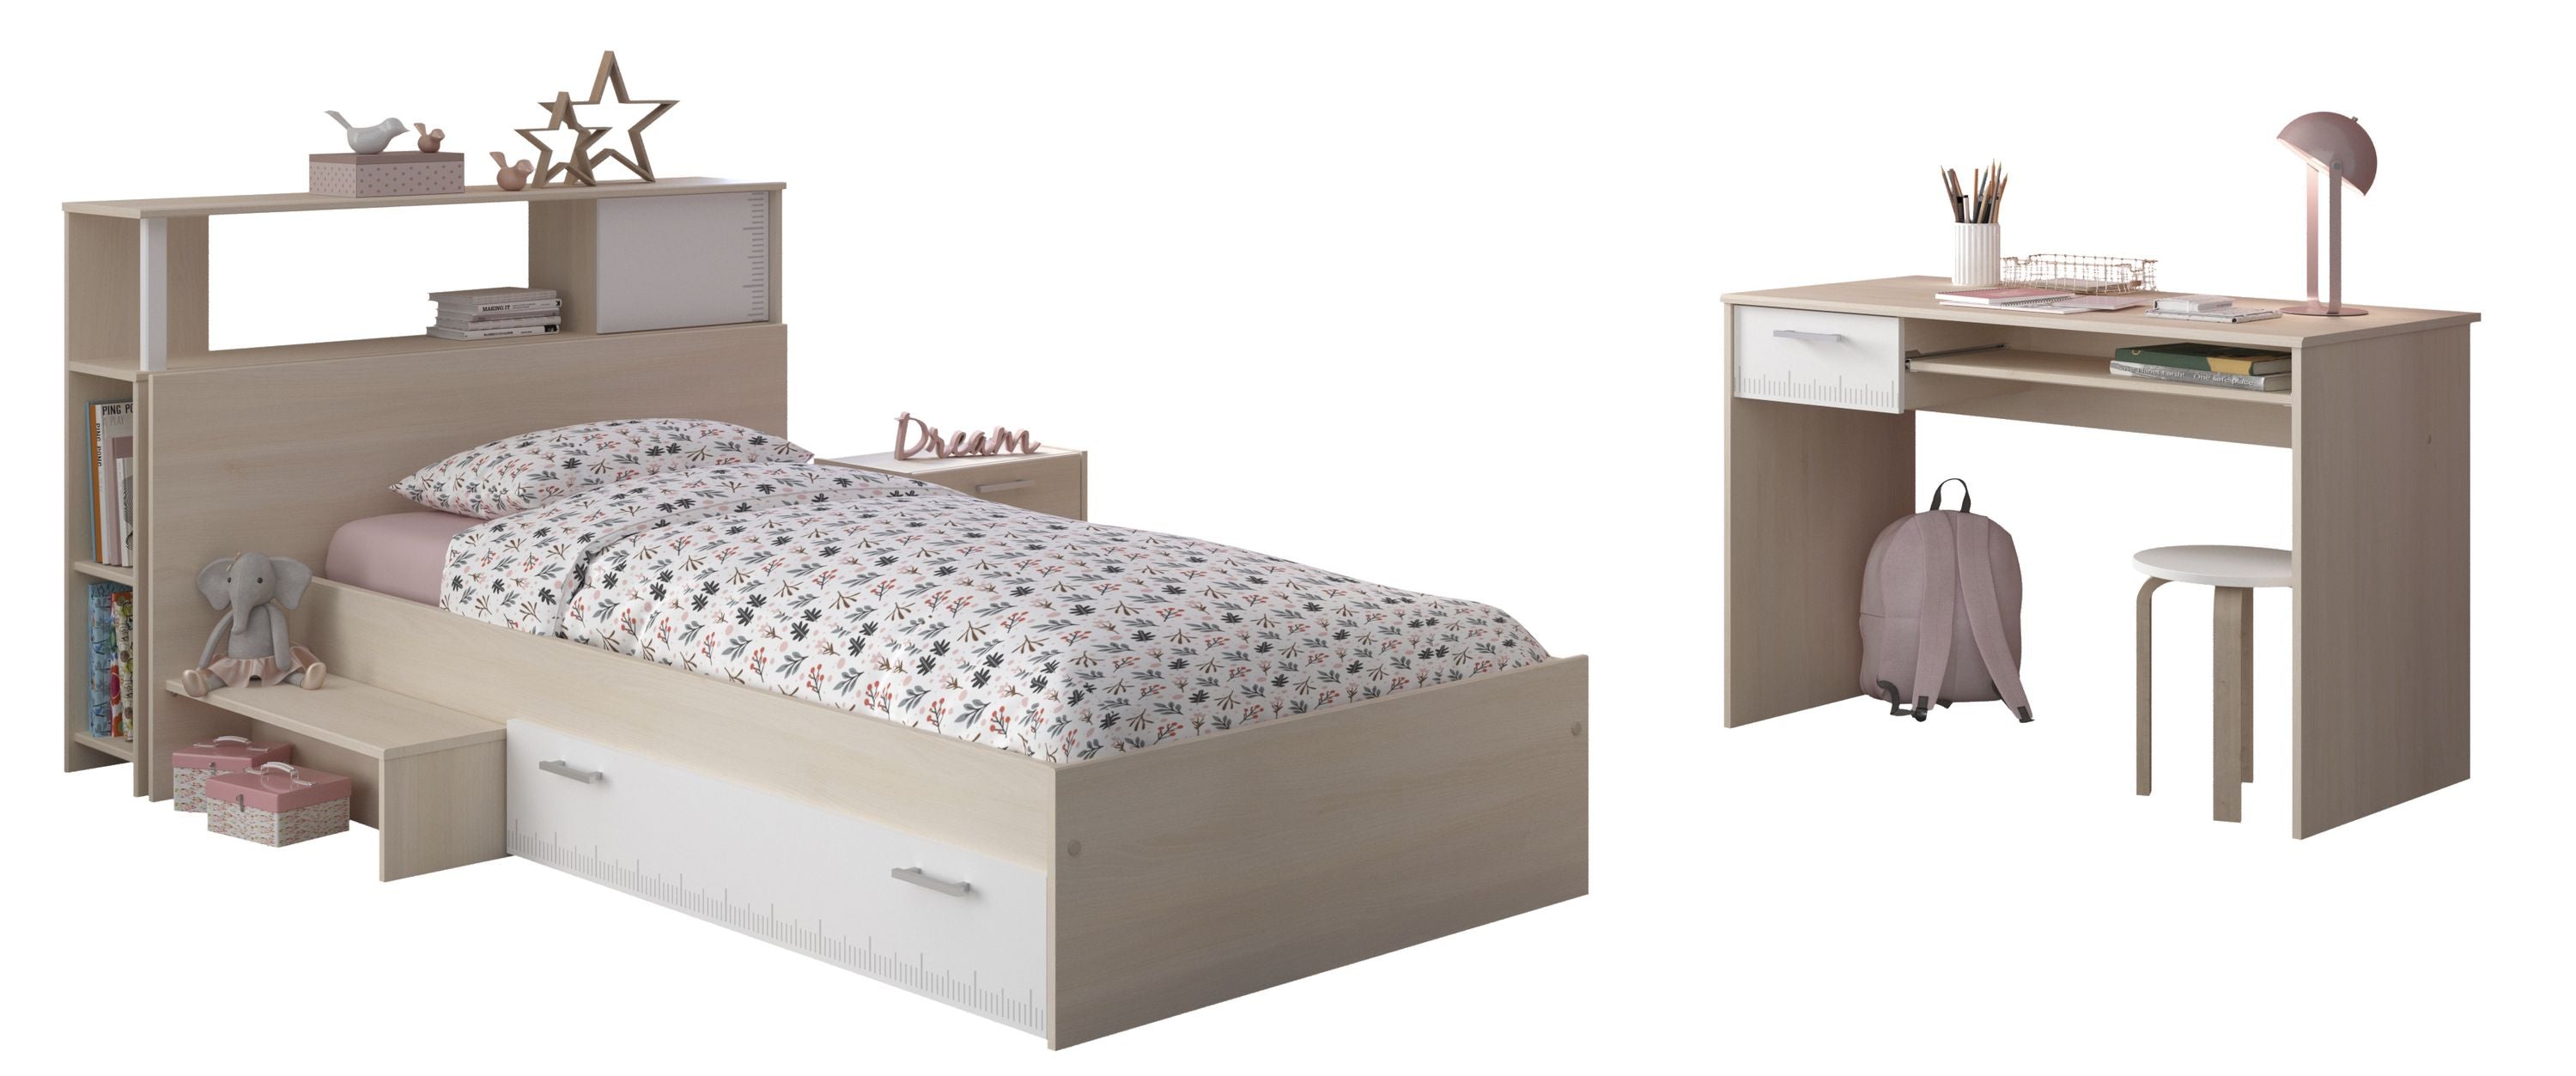 Kinderzimmer Charly 11 Parisot 3-teilig Bett 90*200 cm inkl. Bettkasten + Schreibtisch + Nachtkommode